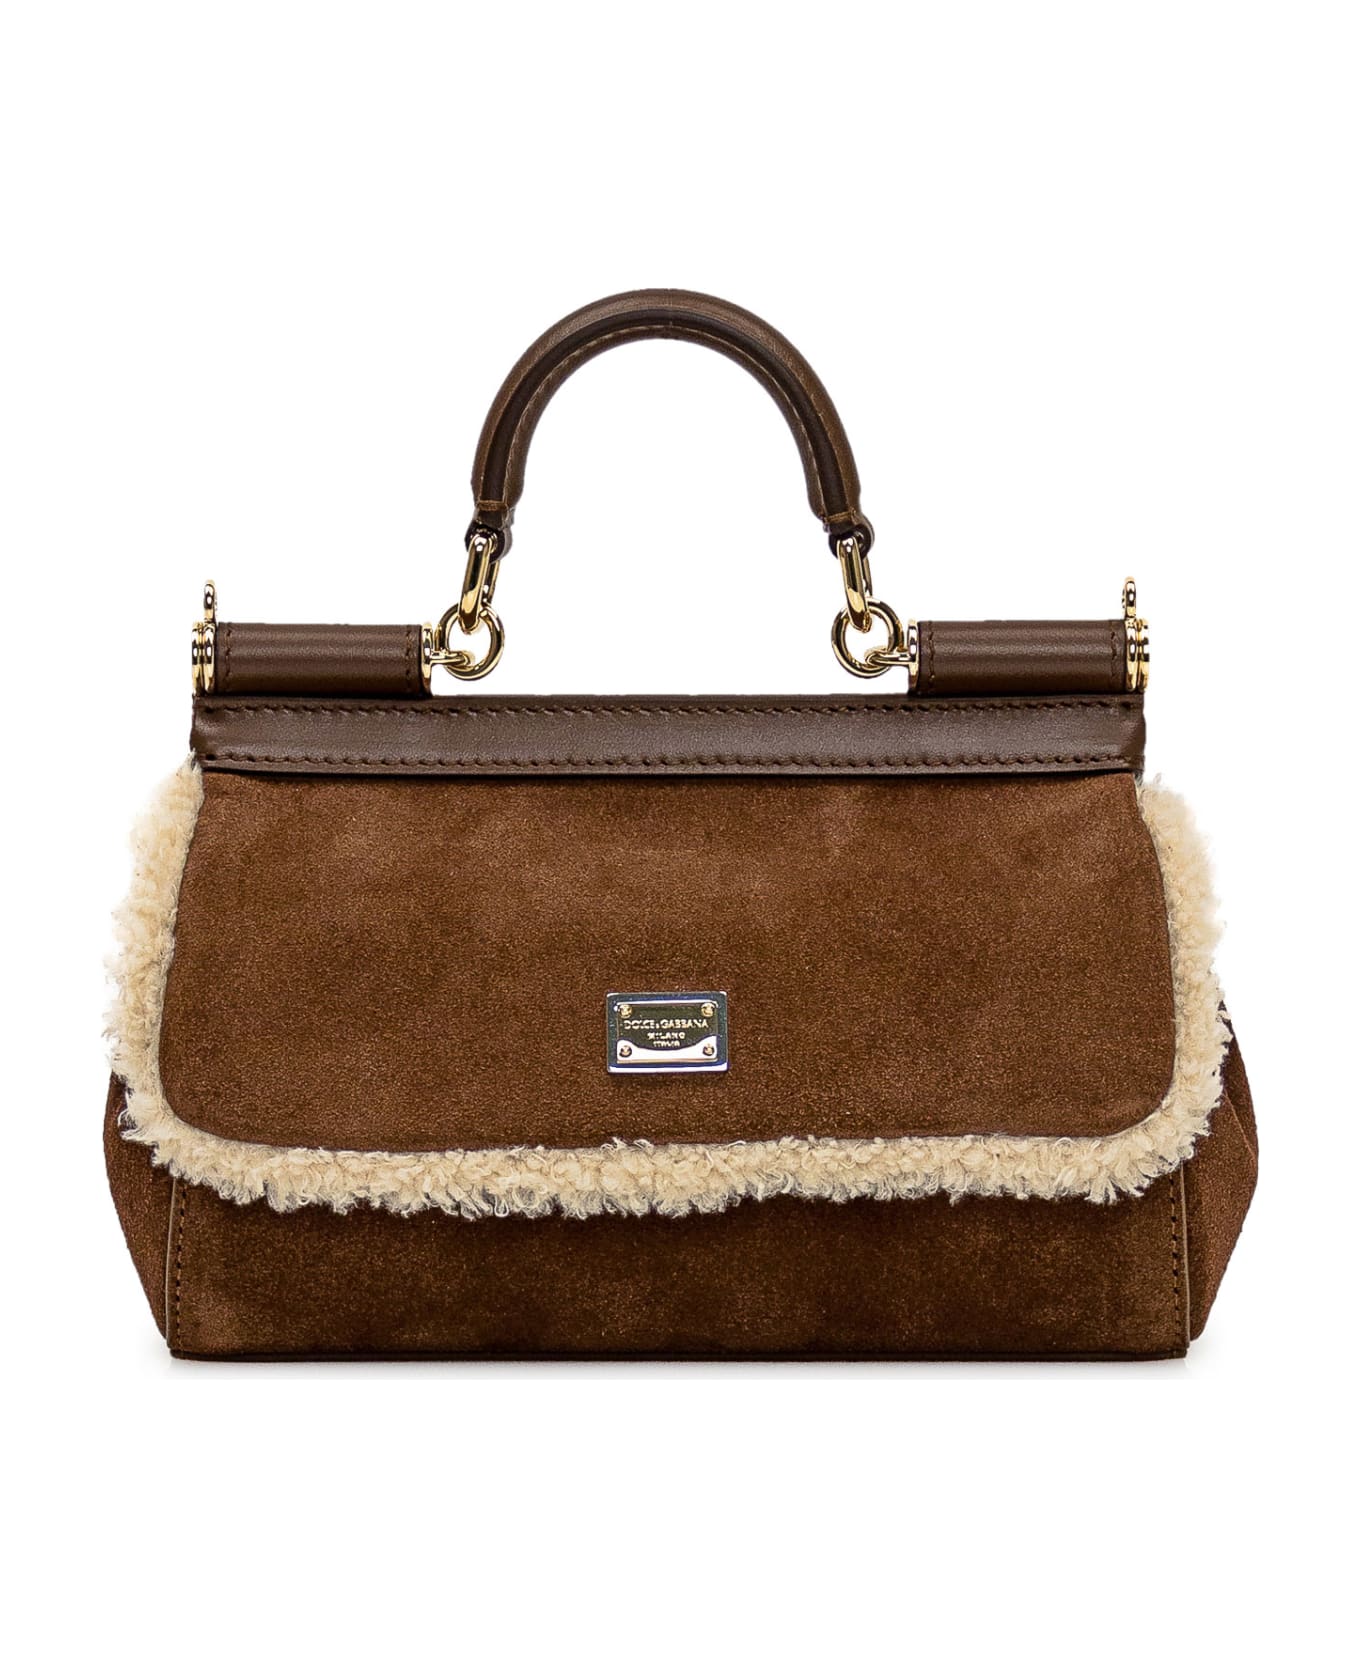 Dolce & Gabbana Sicily Handbag - brown